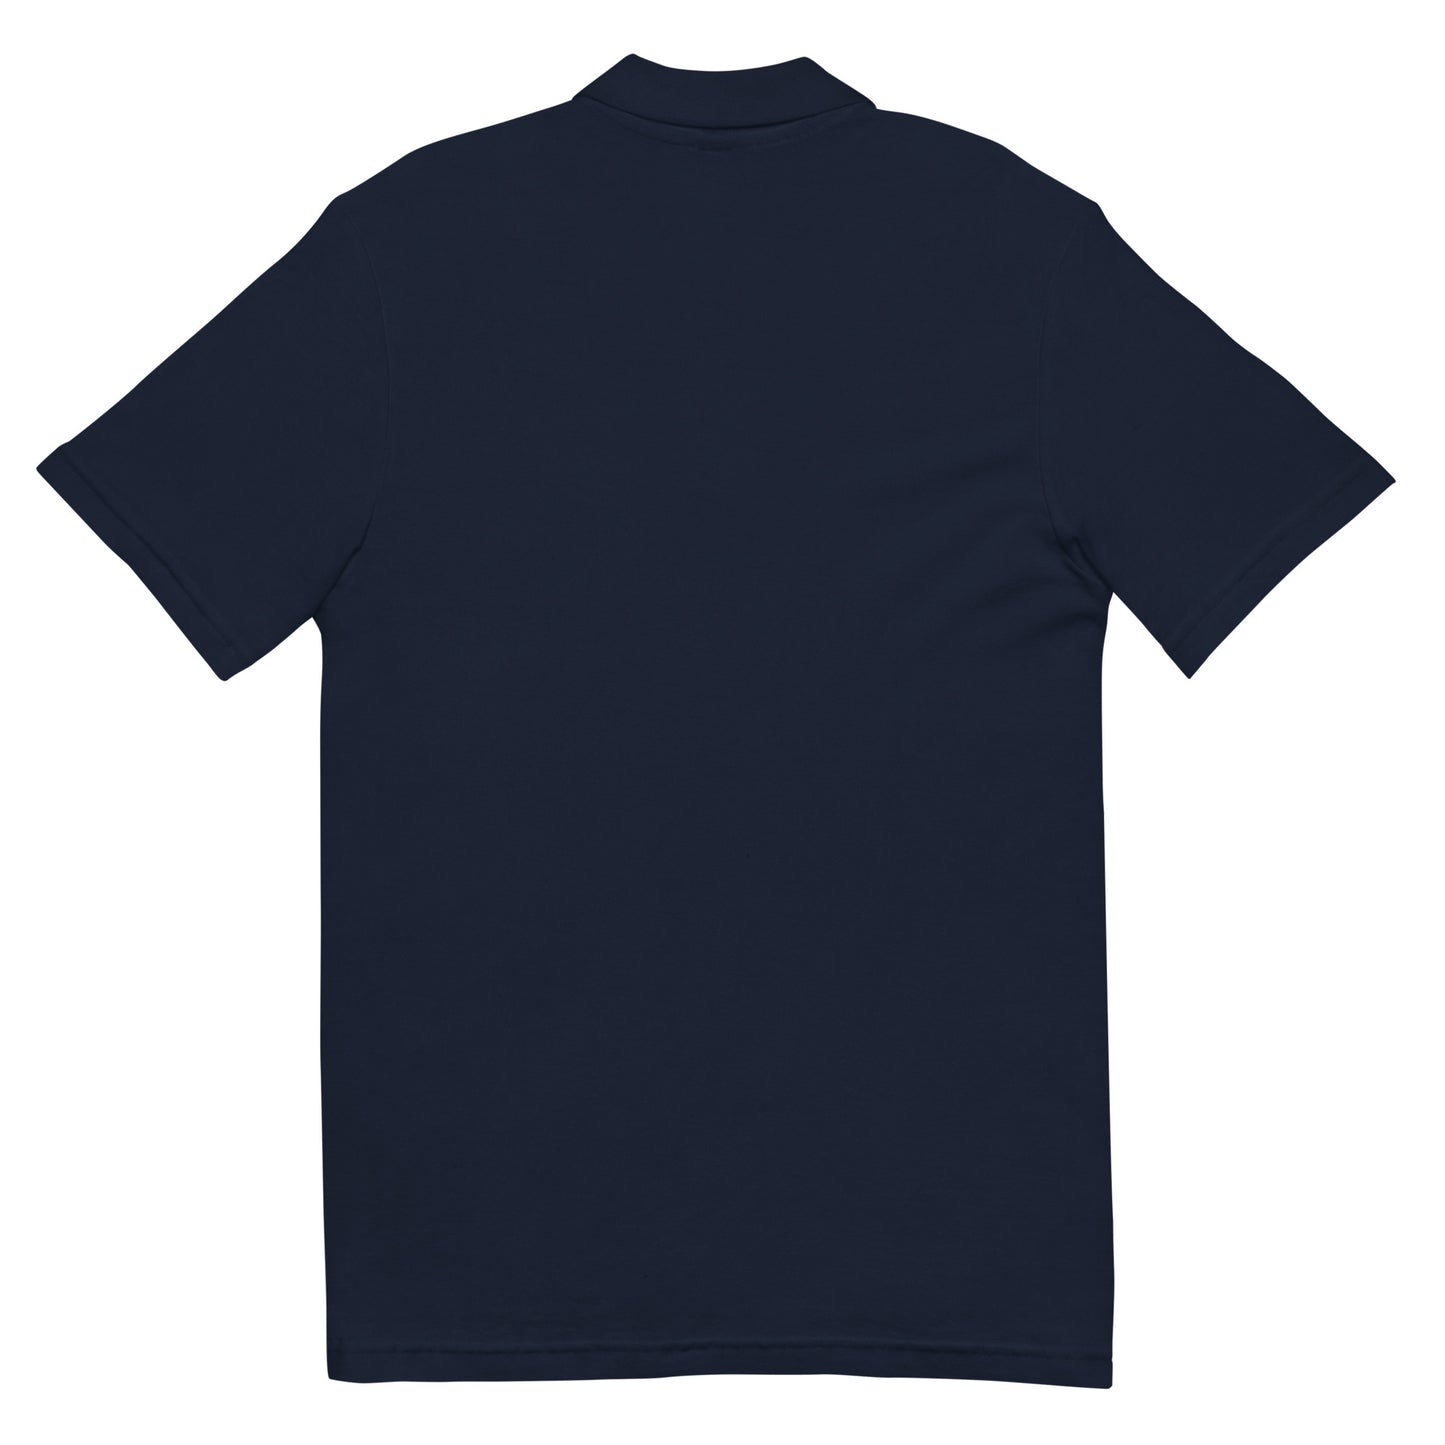 Unisex Polo Shirt (Race)